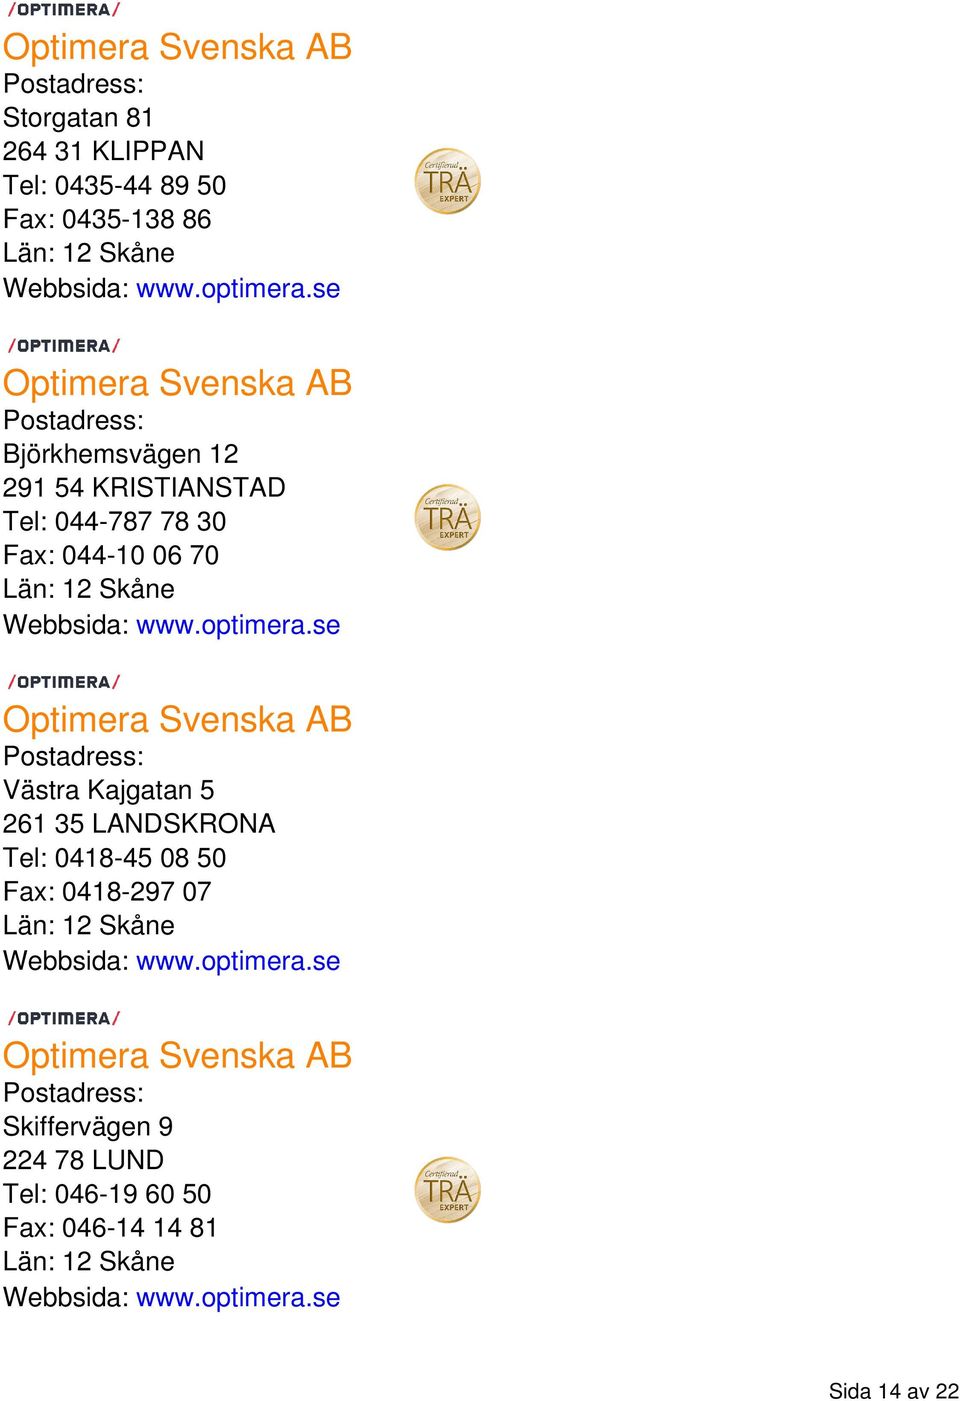 optimera.se Optimera Svenska AB Västra Kajgatan 5 261 35 LANDSKRONA Tel: 0418-45 08 50 Fax: 0418-297 07 Webbsida: www.